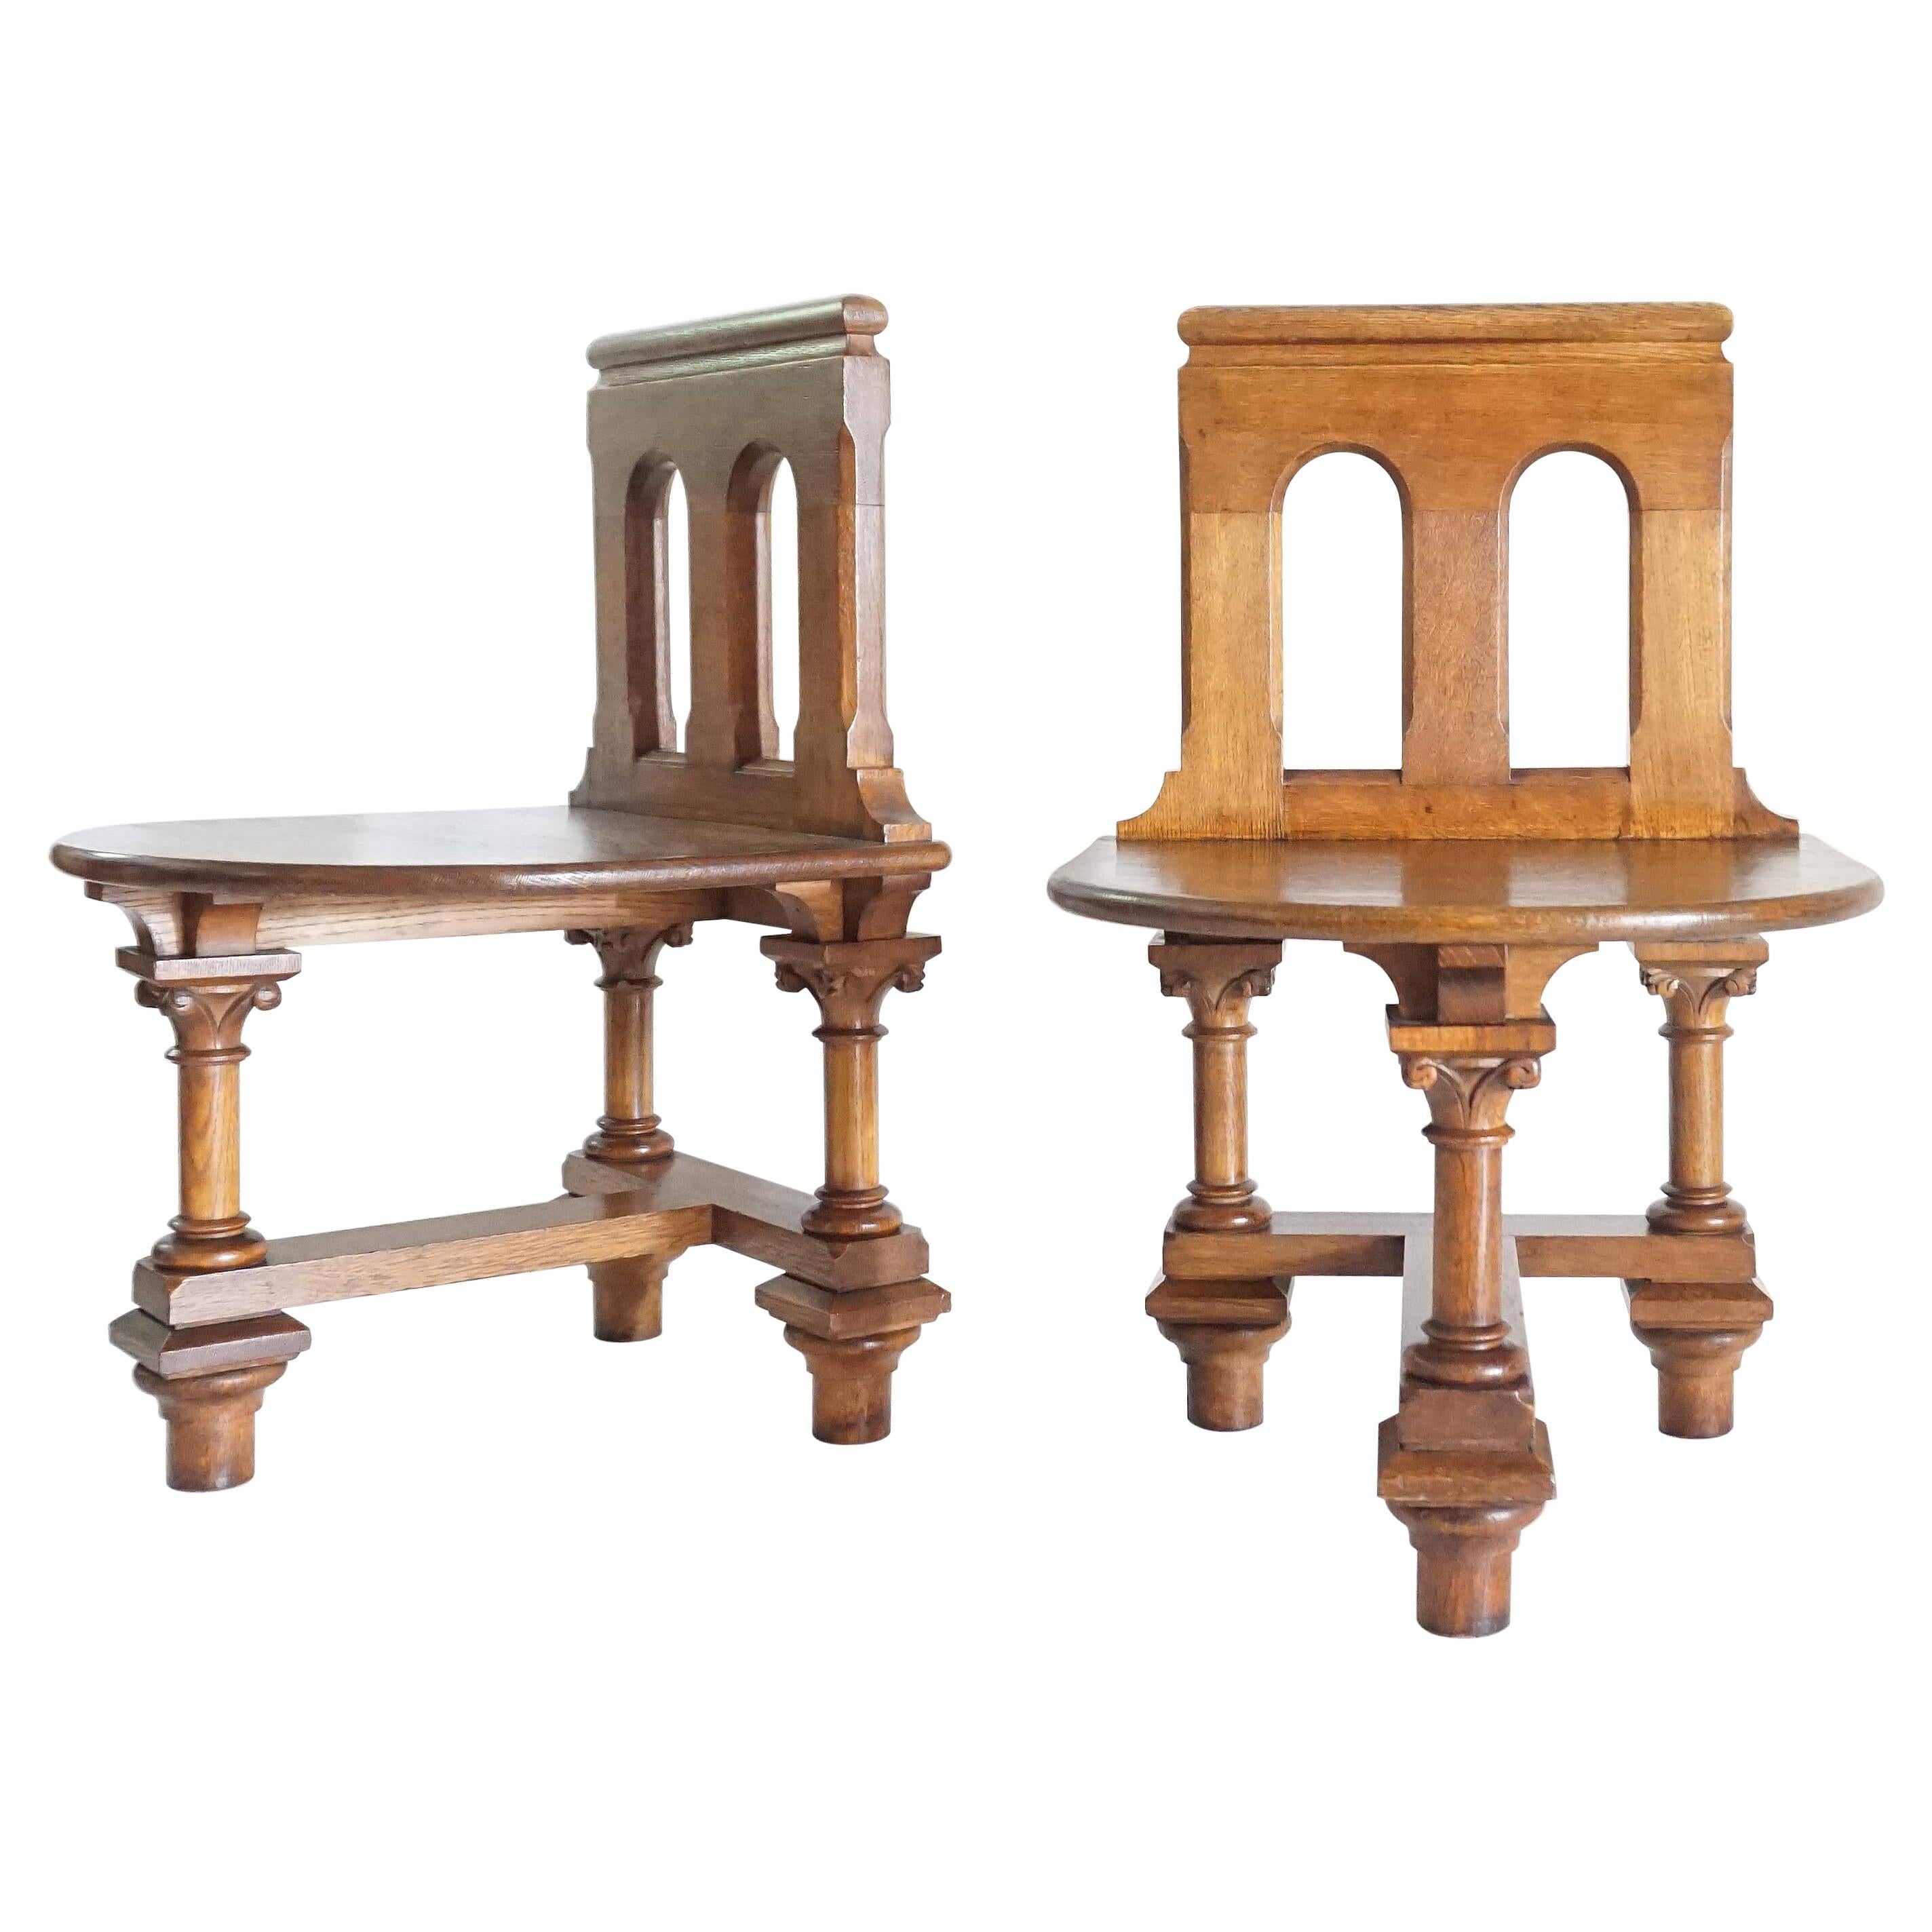 Französisches römisches Revival Eichenholz-Hallenstühle oder -stühle, um 1900